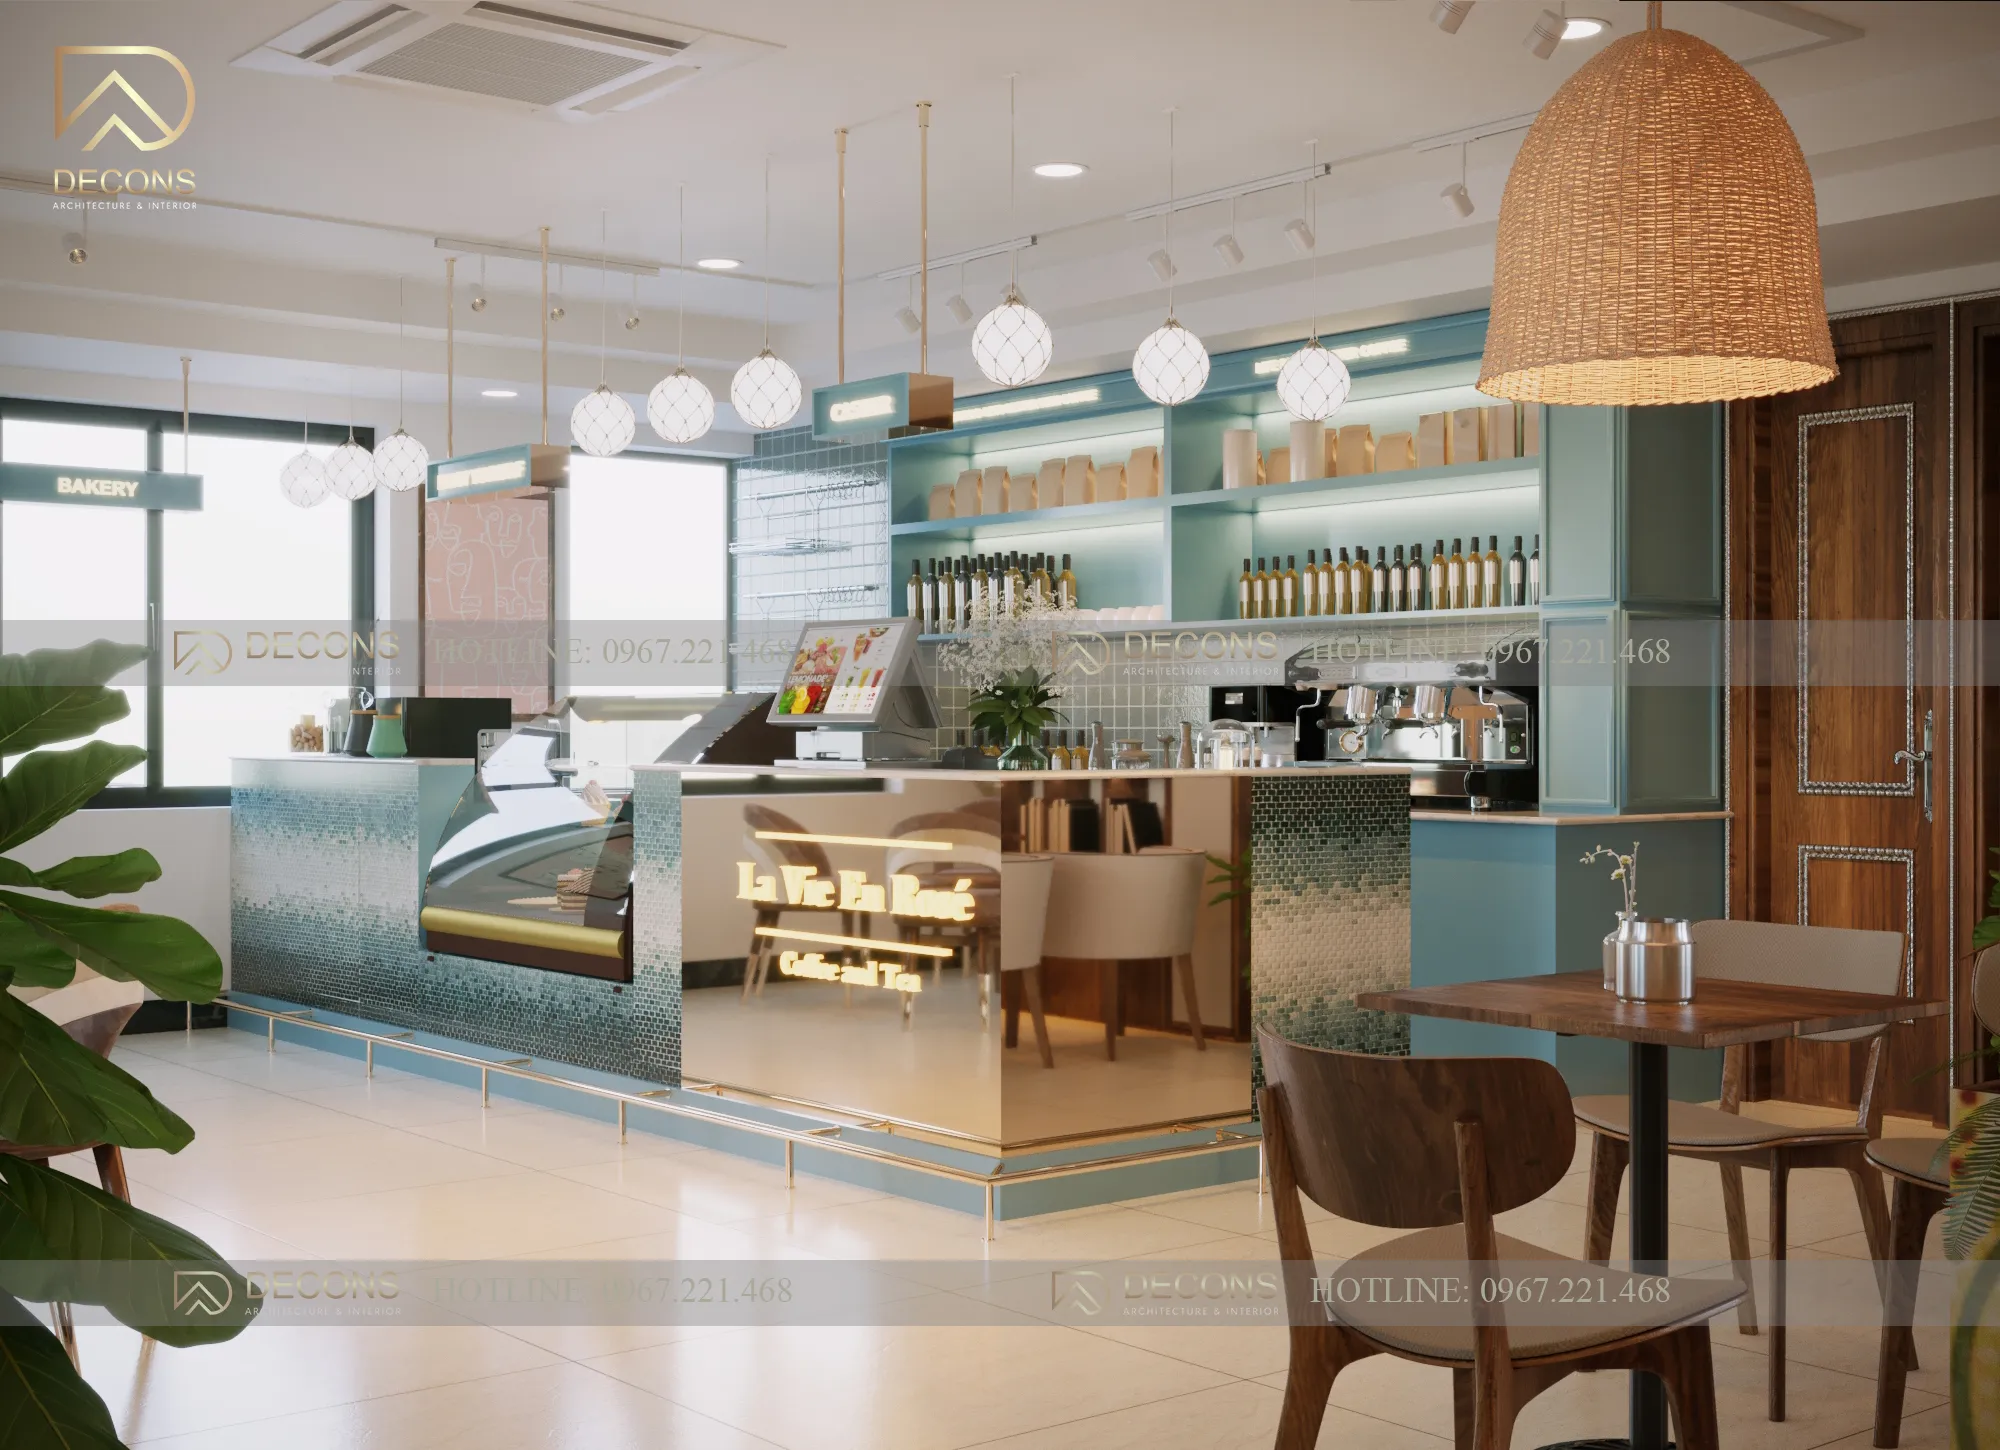 04_11zon Thiết kế nội thất quán cà phê khách sạn Thái Nguyên  thiết kế nhà đẹp Nghệ An